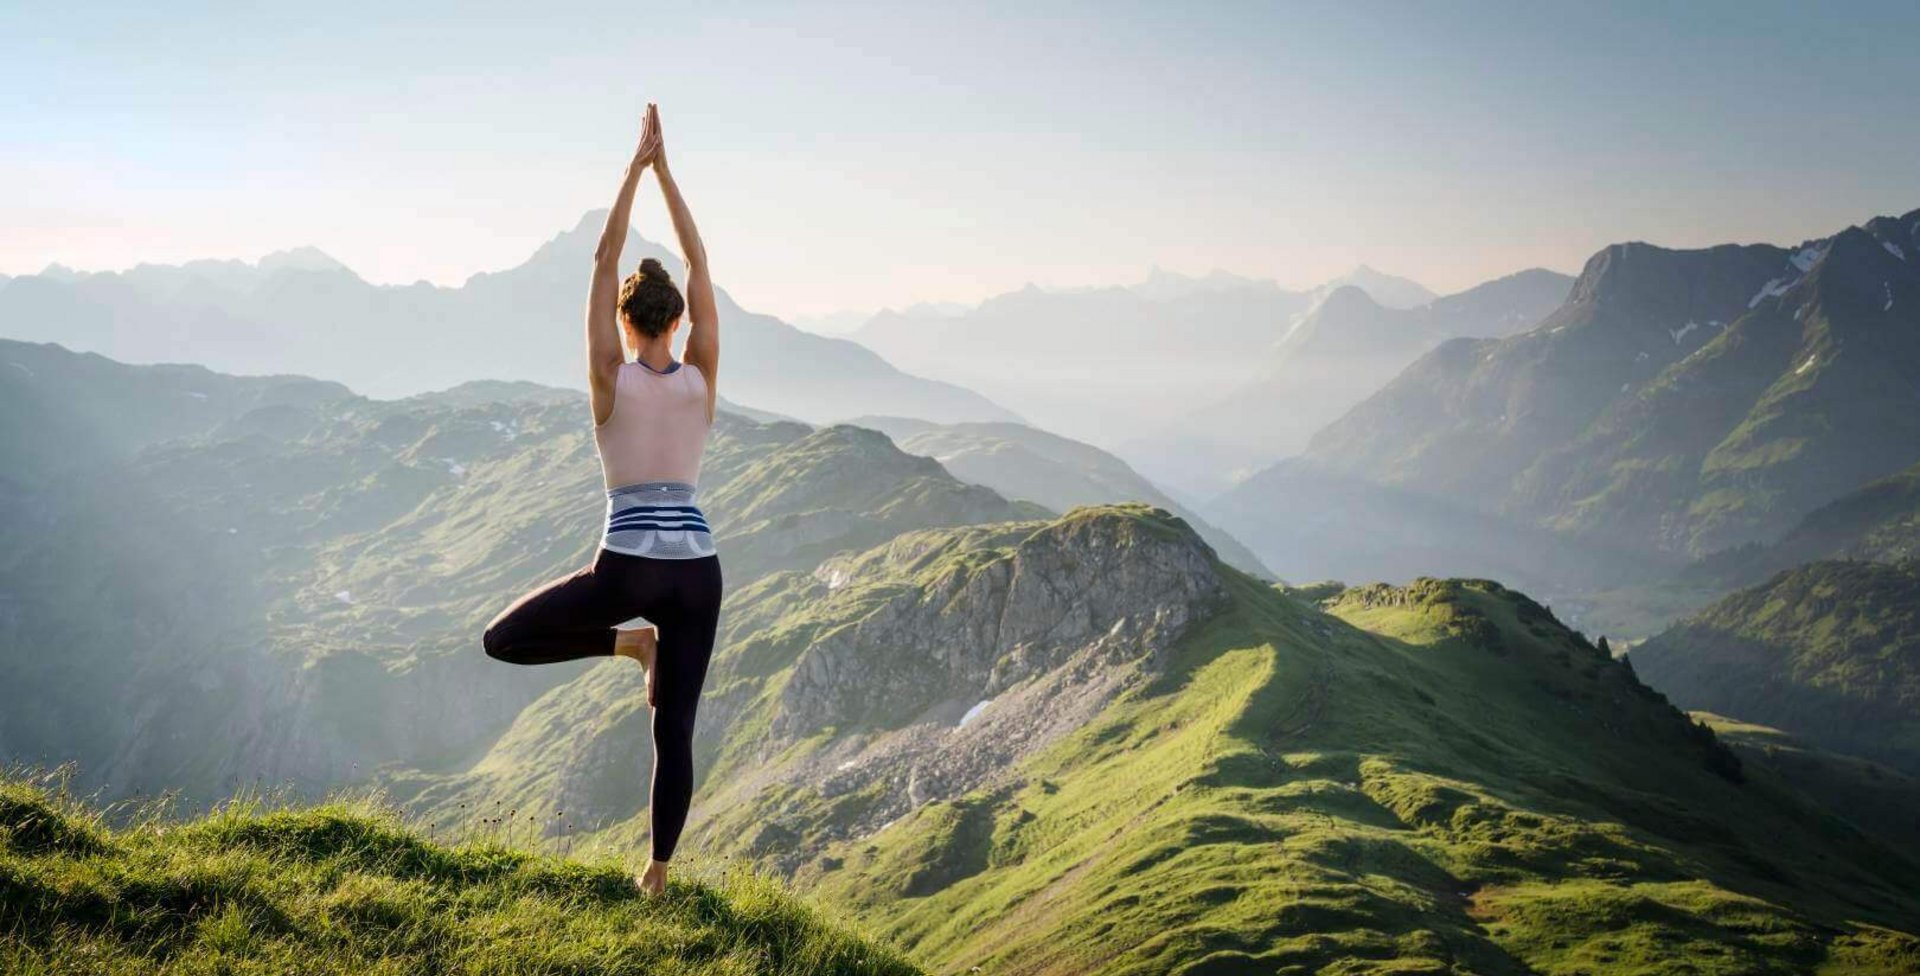 Das Bild zeigt eine Frau in Yogapose vor einem Bergpanorama. Yoga erweist sich als gelenkschonende Sportart. Zur Unterstützung ihres Rückens trägt die Frau eine LumboTrain Bandage.